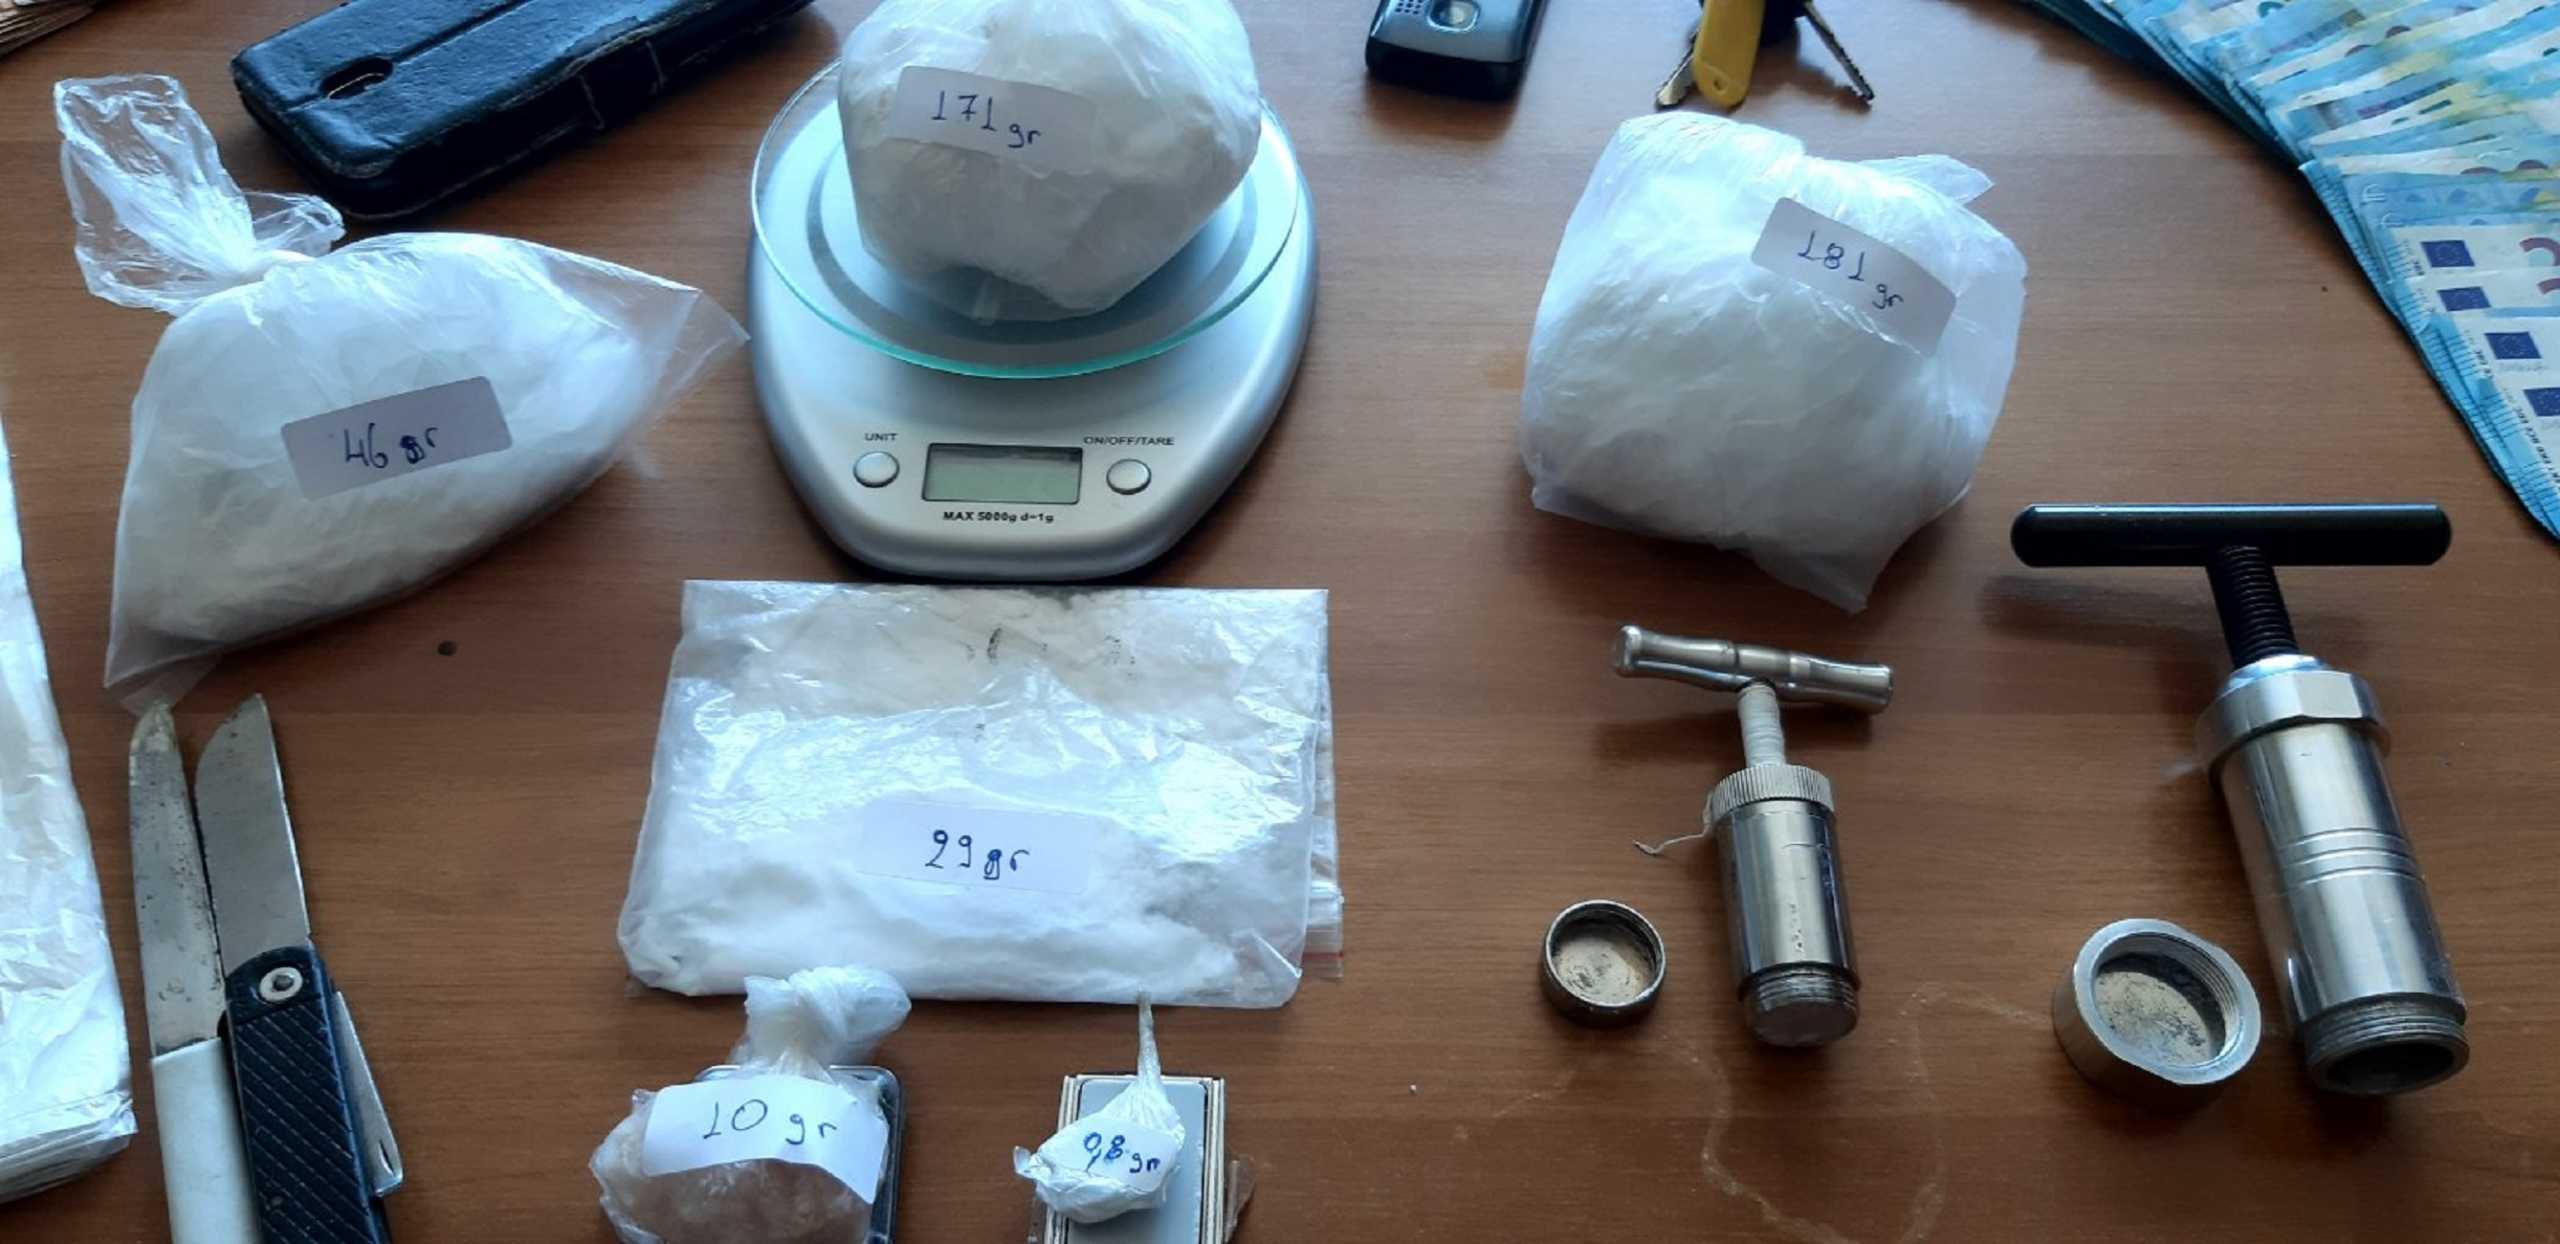 Ηράκλειο: 66χρονος έκρυβε σπίτι του εκατοντάδες γραμμάρια κοκαΐνης και πάνω από 12.000 ευρώ